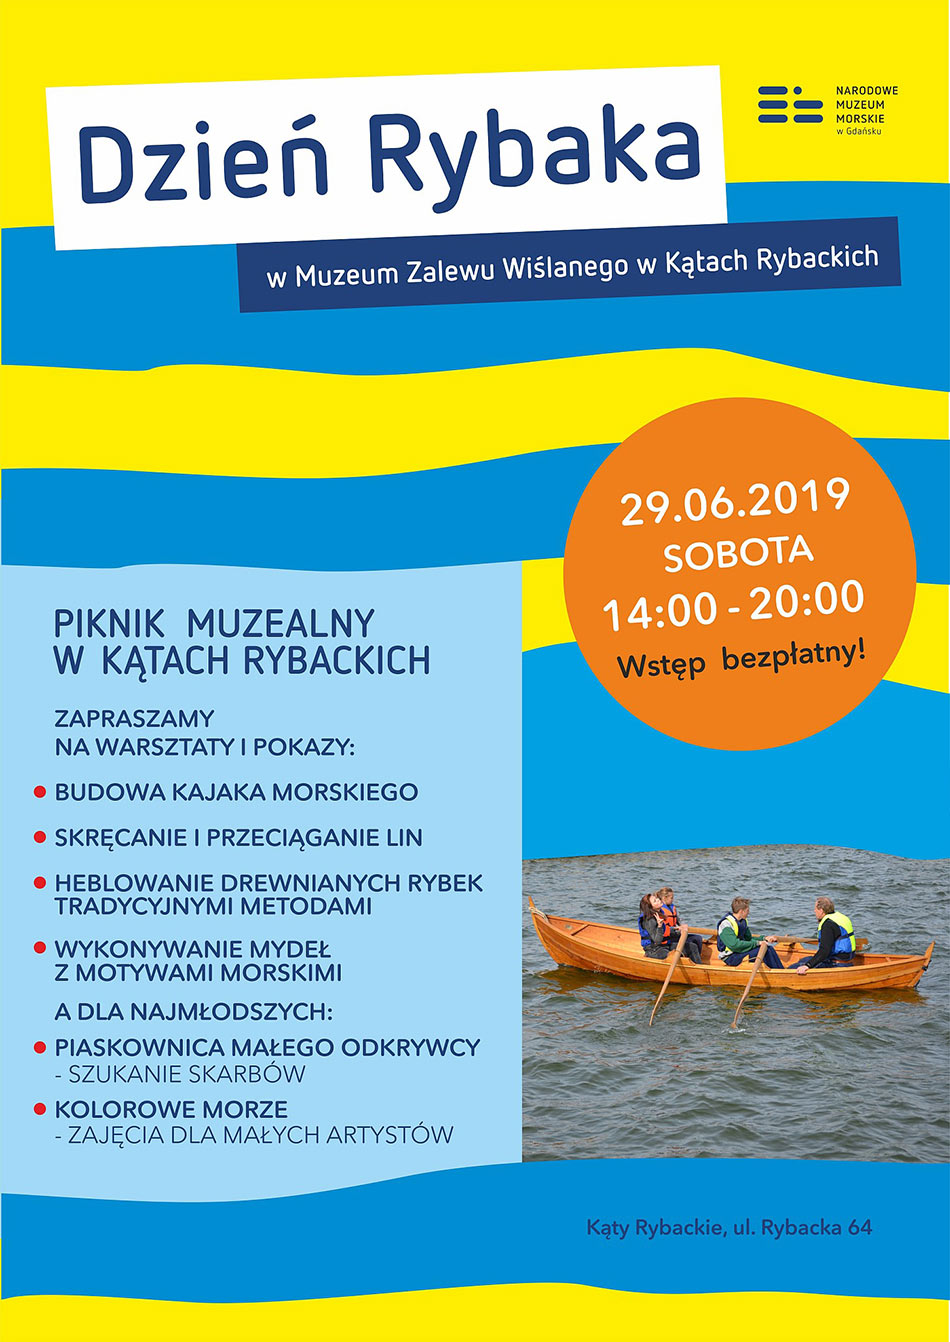 DzienRybaka plakat Katy Rybackie